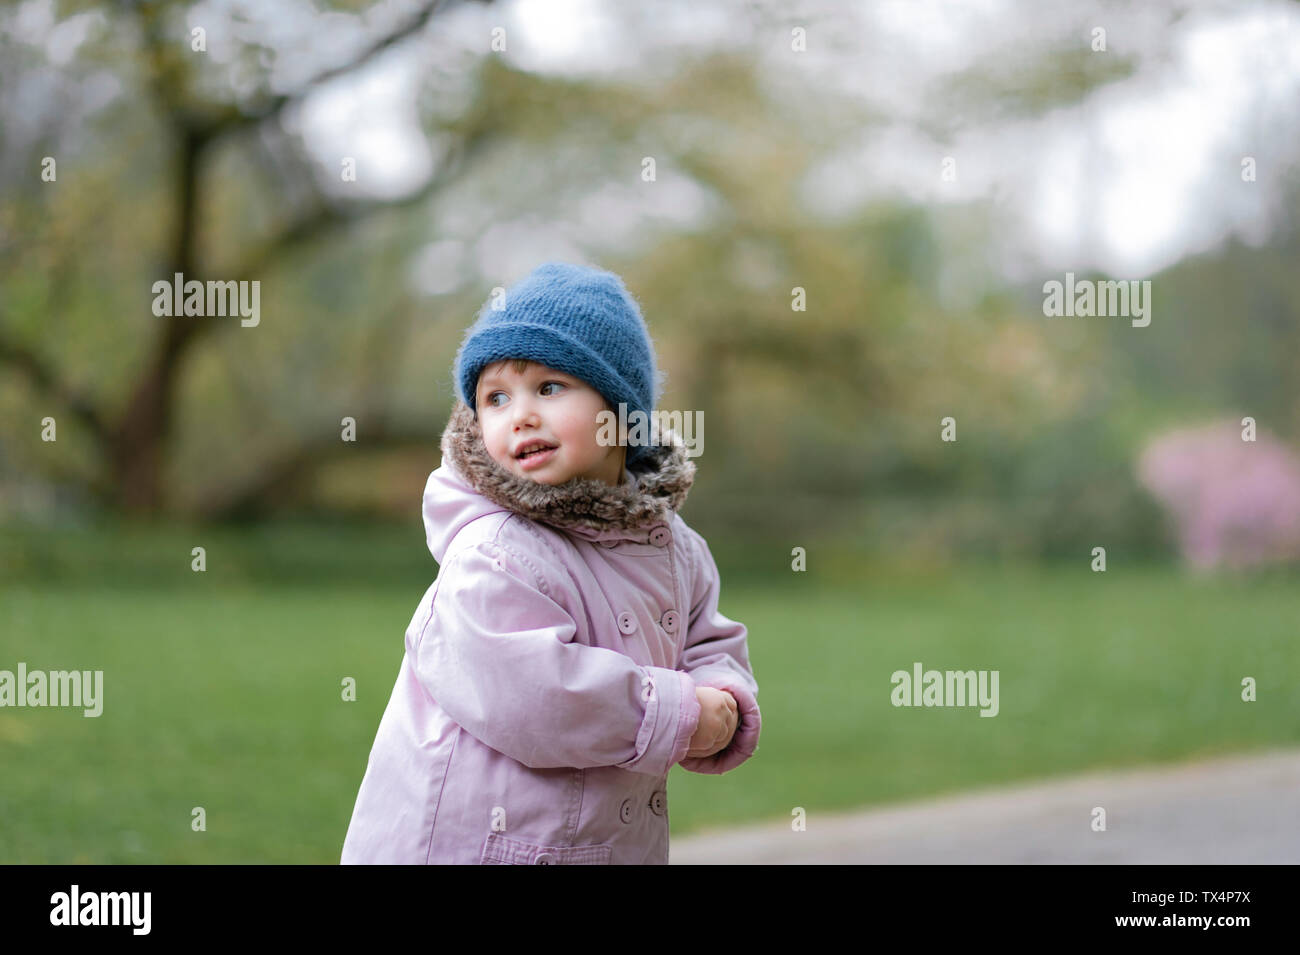 Portrait de petite fille dans un parc portant chapeau bleu et manteau rose Banque D'Images